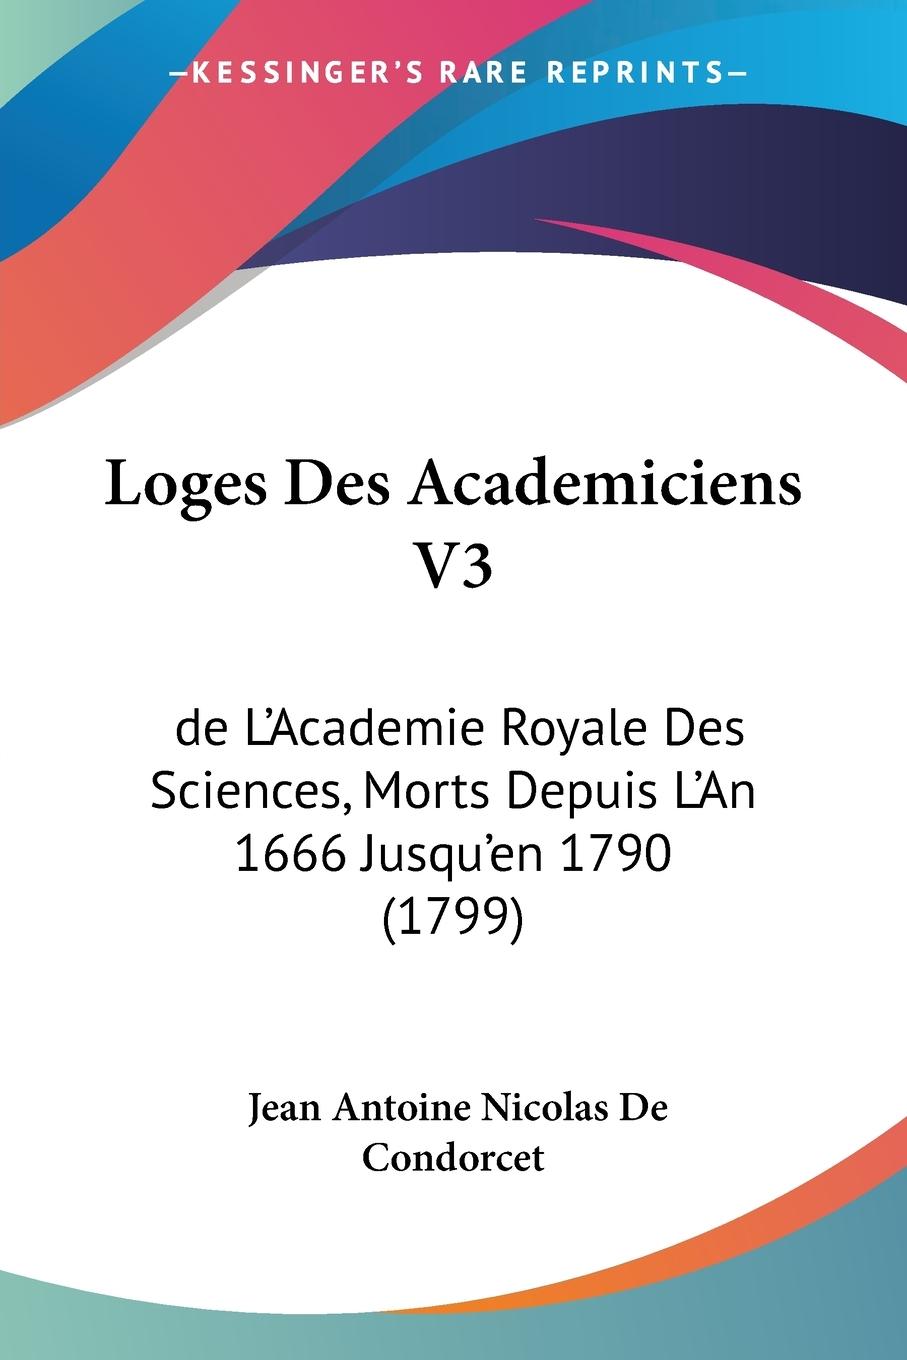 Loges Des Academiciens V3 - De Condorcet, Jean Antoine Nicolas